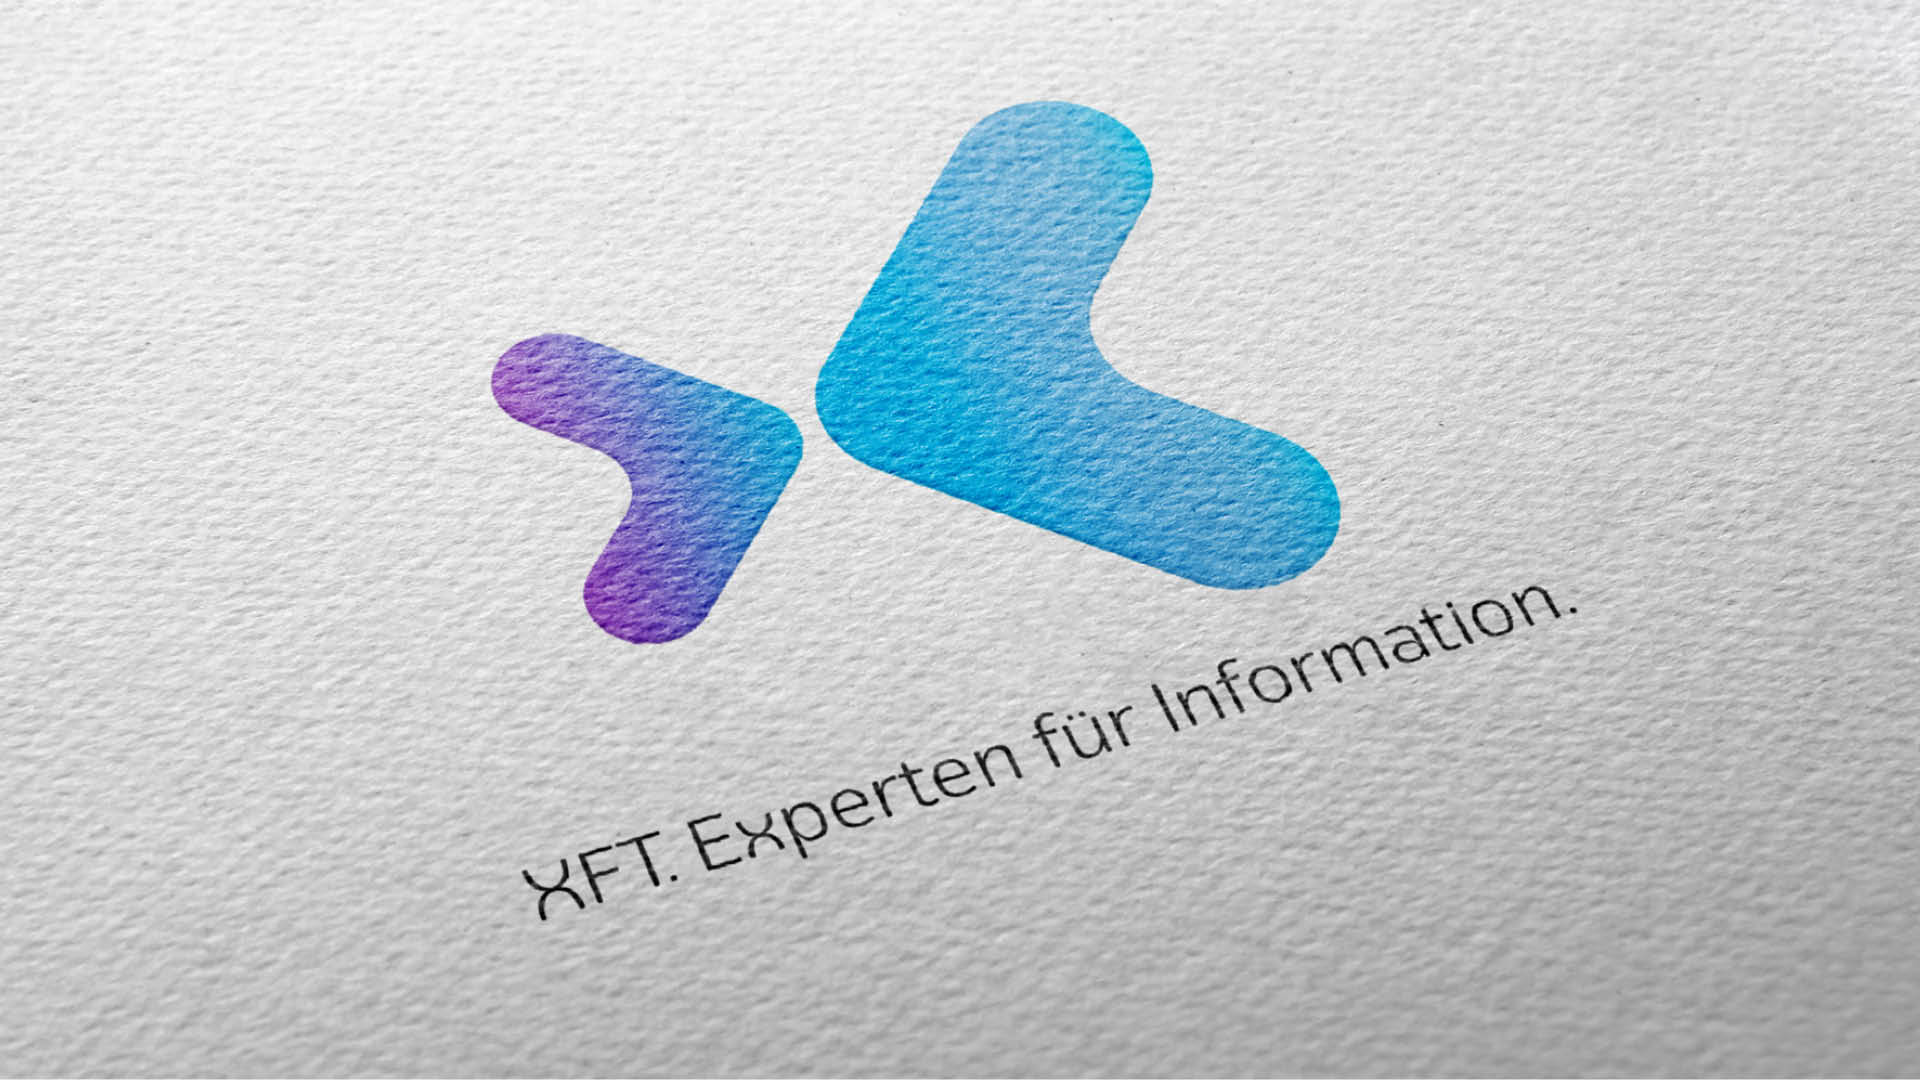 XFT - Leistungen - Callies & Schewe Kommunikation B2B Marketing Agentur Mannheim